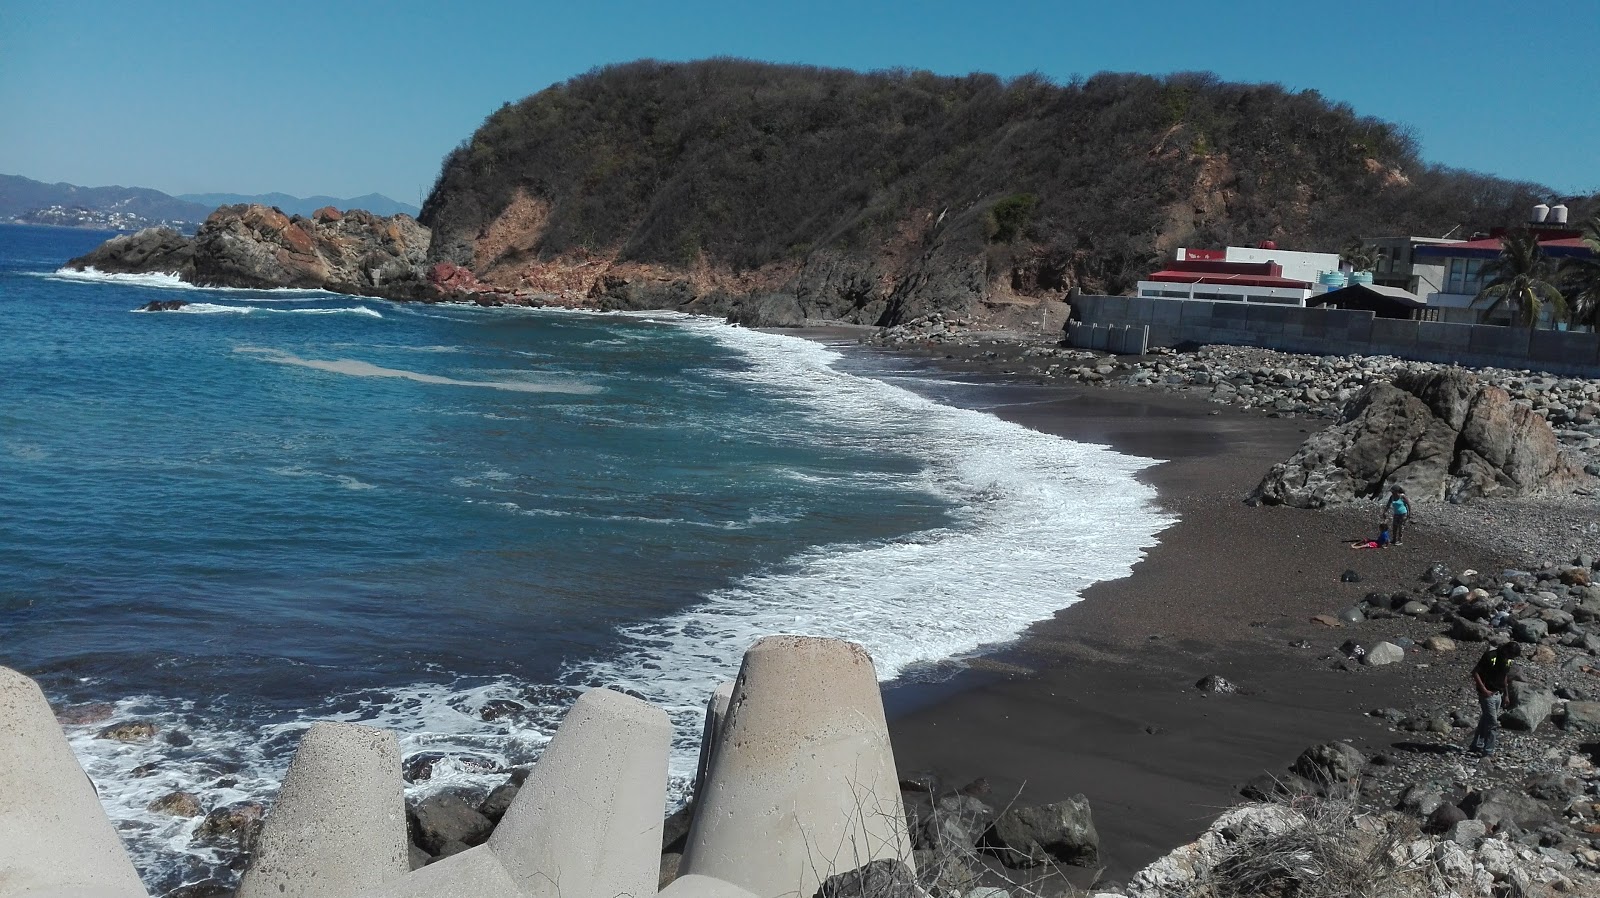 Playa Ventanas'in fotoğrafı taşlı kum yüzey ile